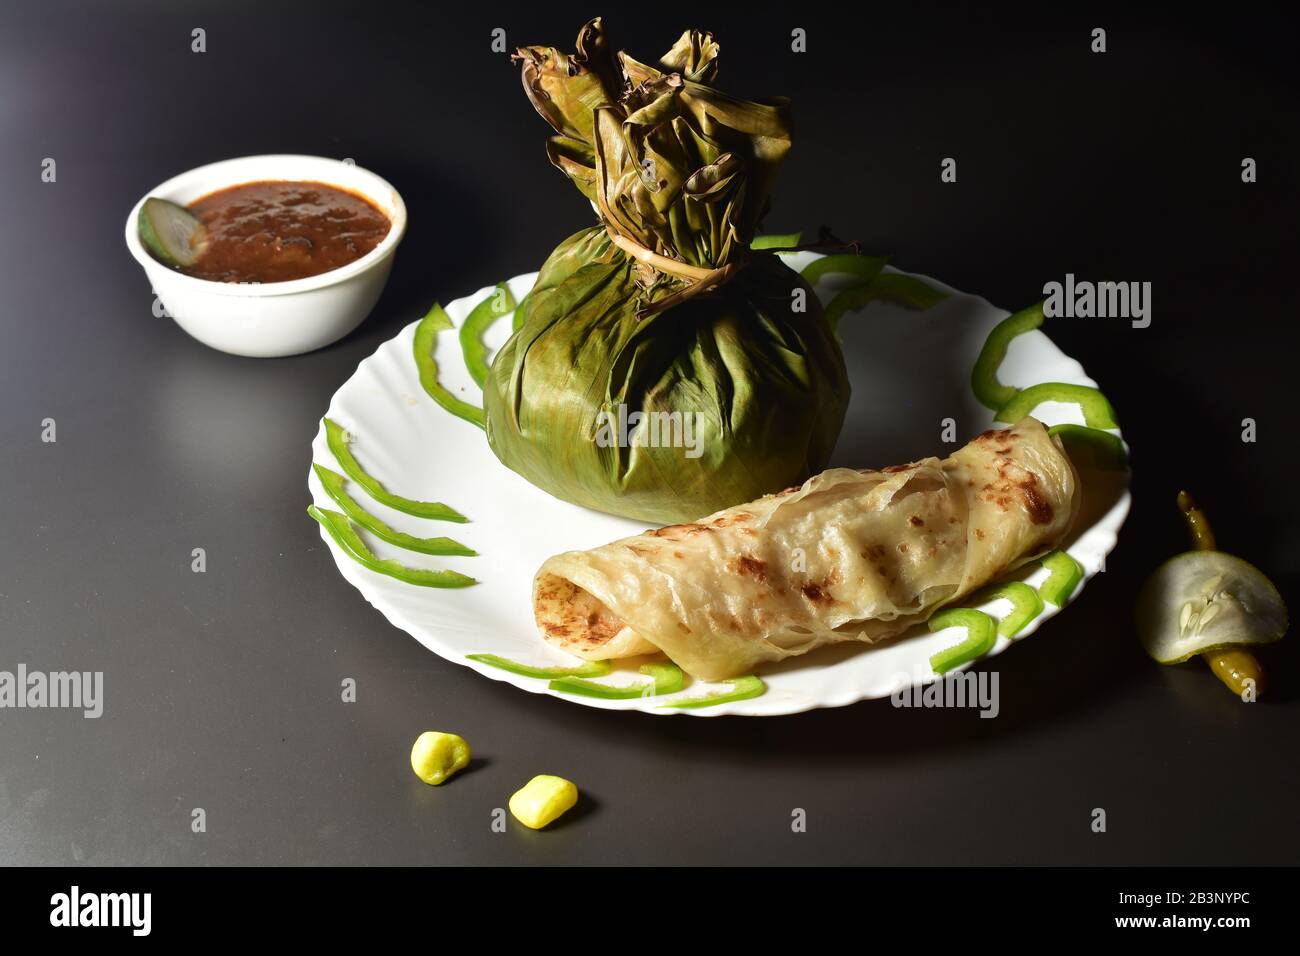 comida al estilo de kerala porotta kizhiporota y carne fritada. elegante comida tradicional fotografía lateral ángulo. Foto de stock